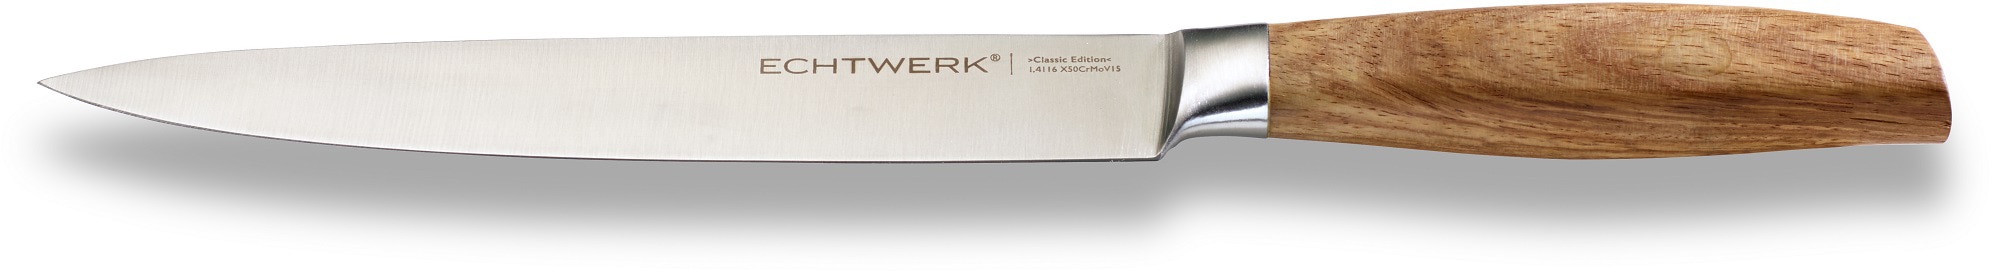 ECHTWERK Schinkenmesser »Classic Edition«, (1 tlg.), Filetiermesser, Edelstahl, Klingenlänge 20 cm, Griff aus Akazienholz